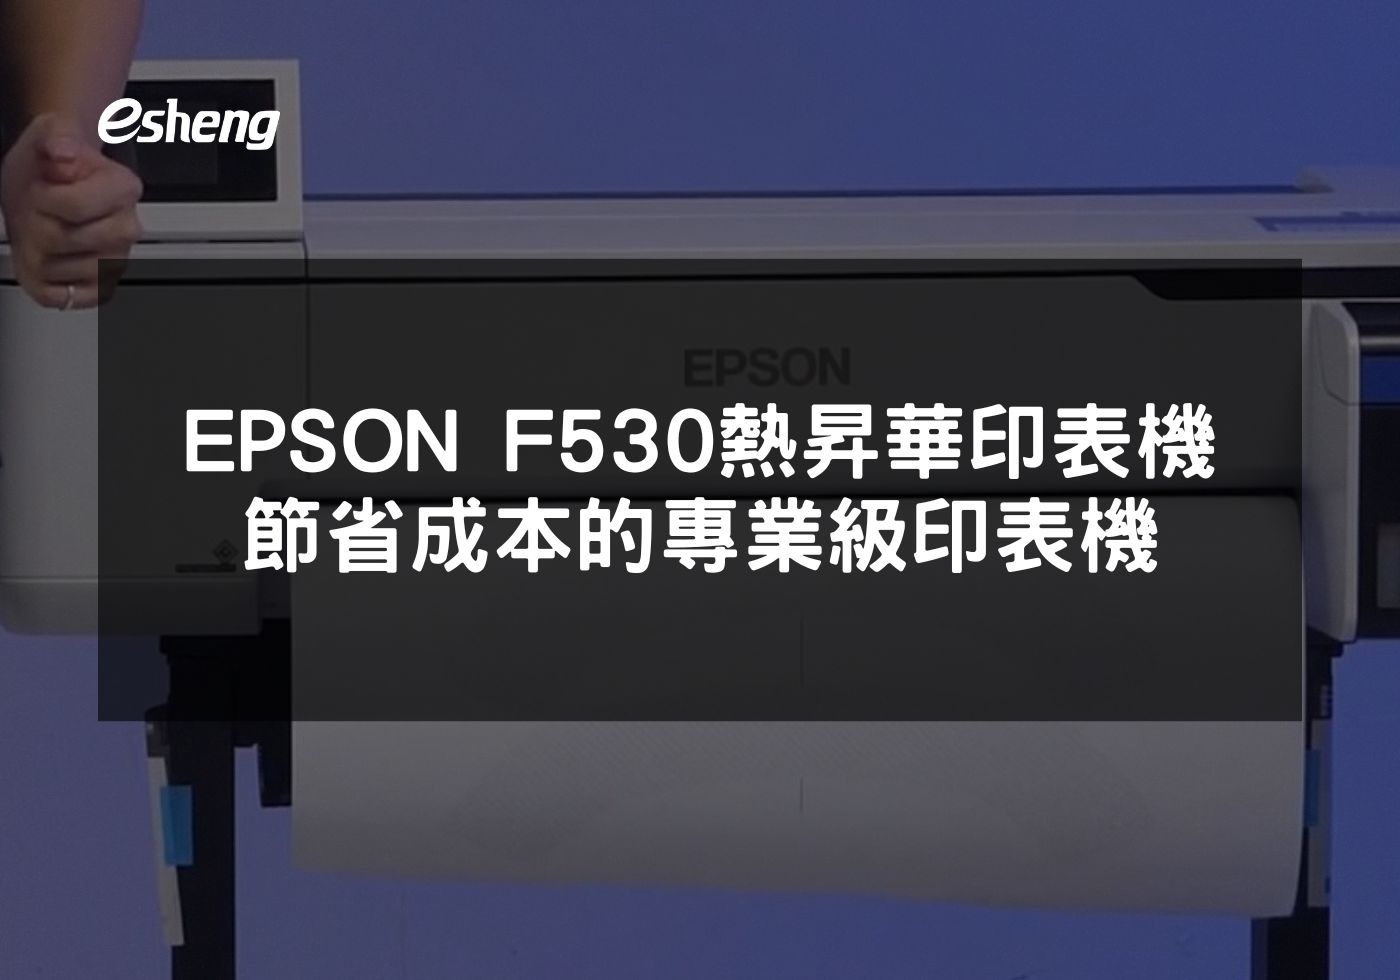 探索EPSON F530熱昇華印表機的多功能應用與節省成本效益